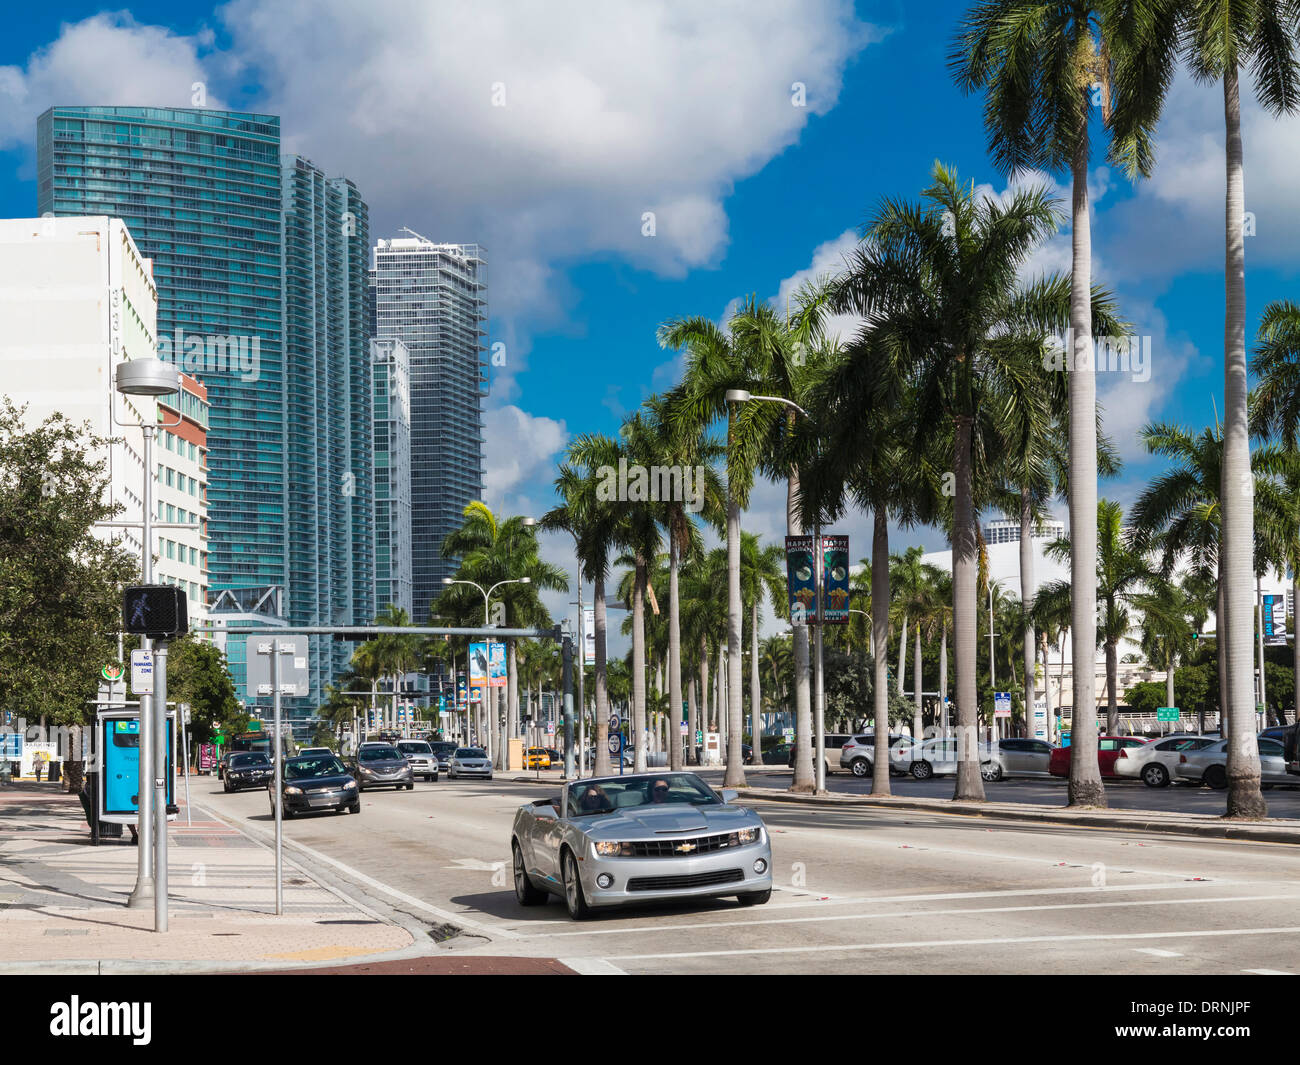 Avis de Miami, Floride, USA - Biscayne Boulevard Banque D'Images